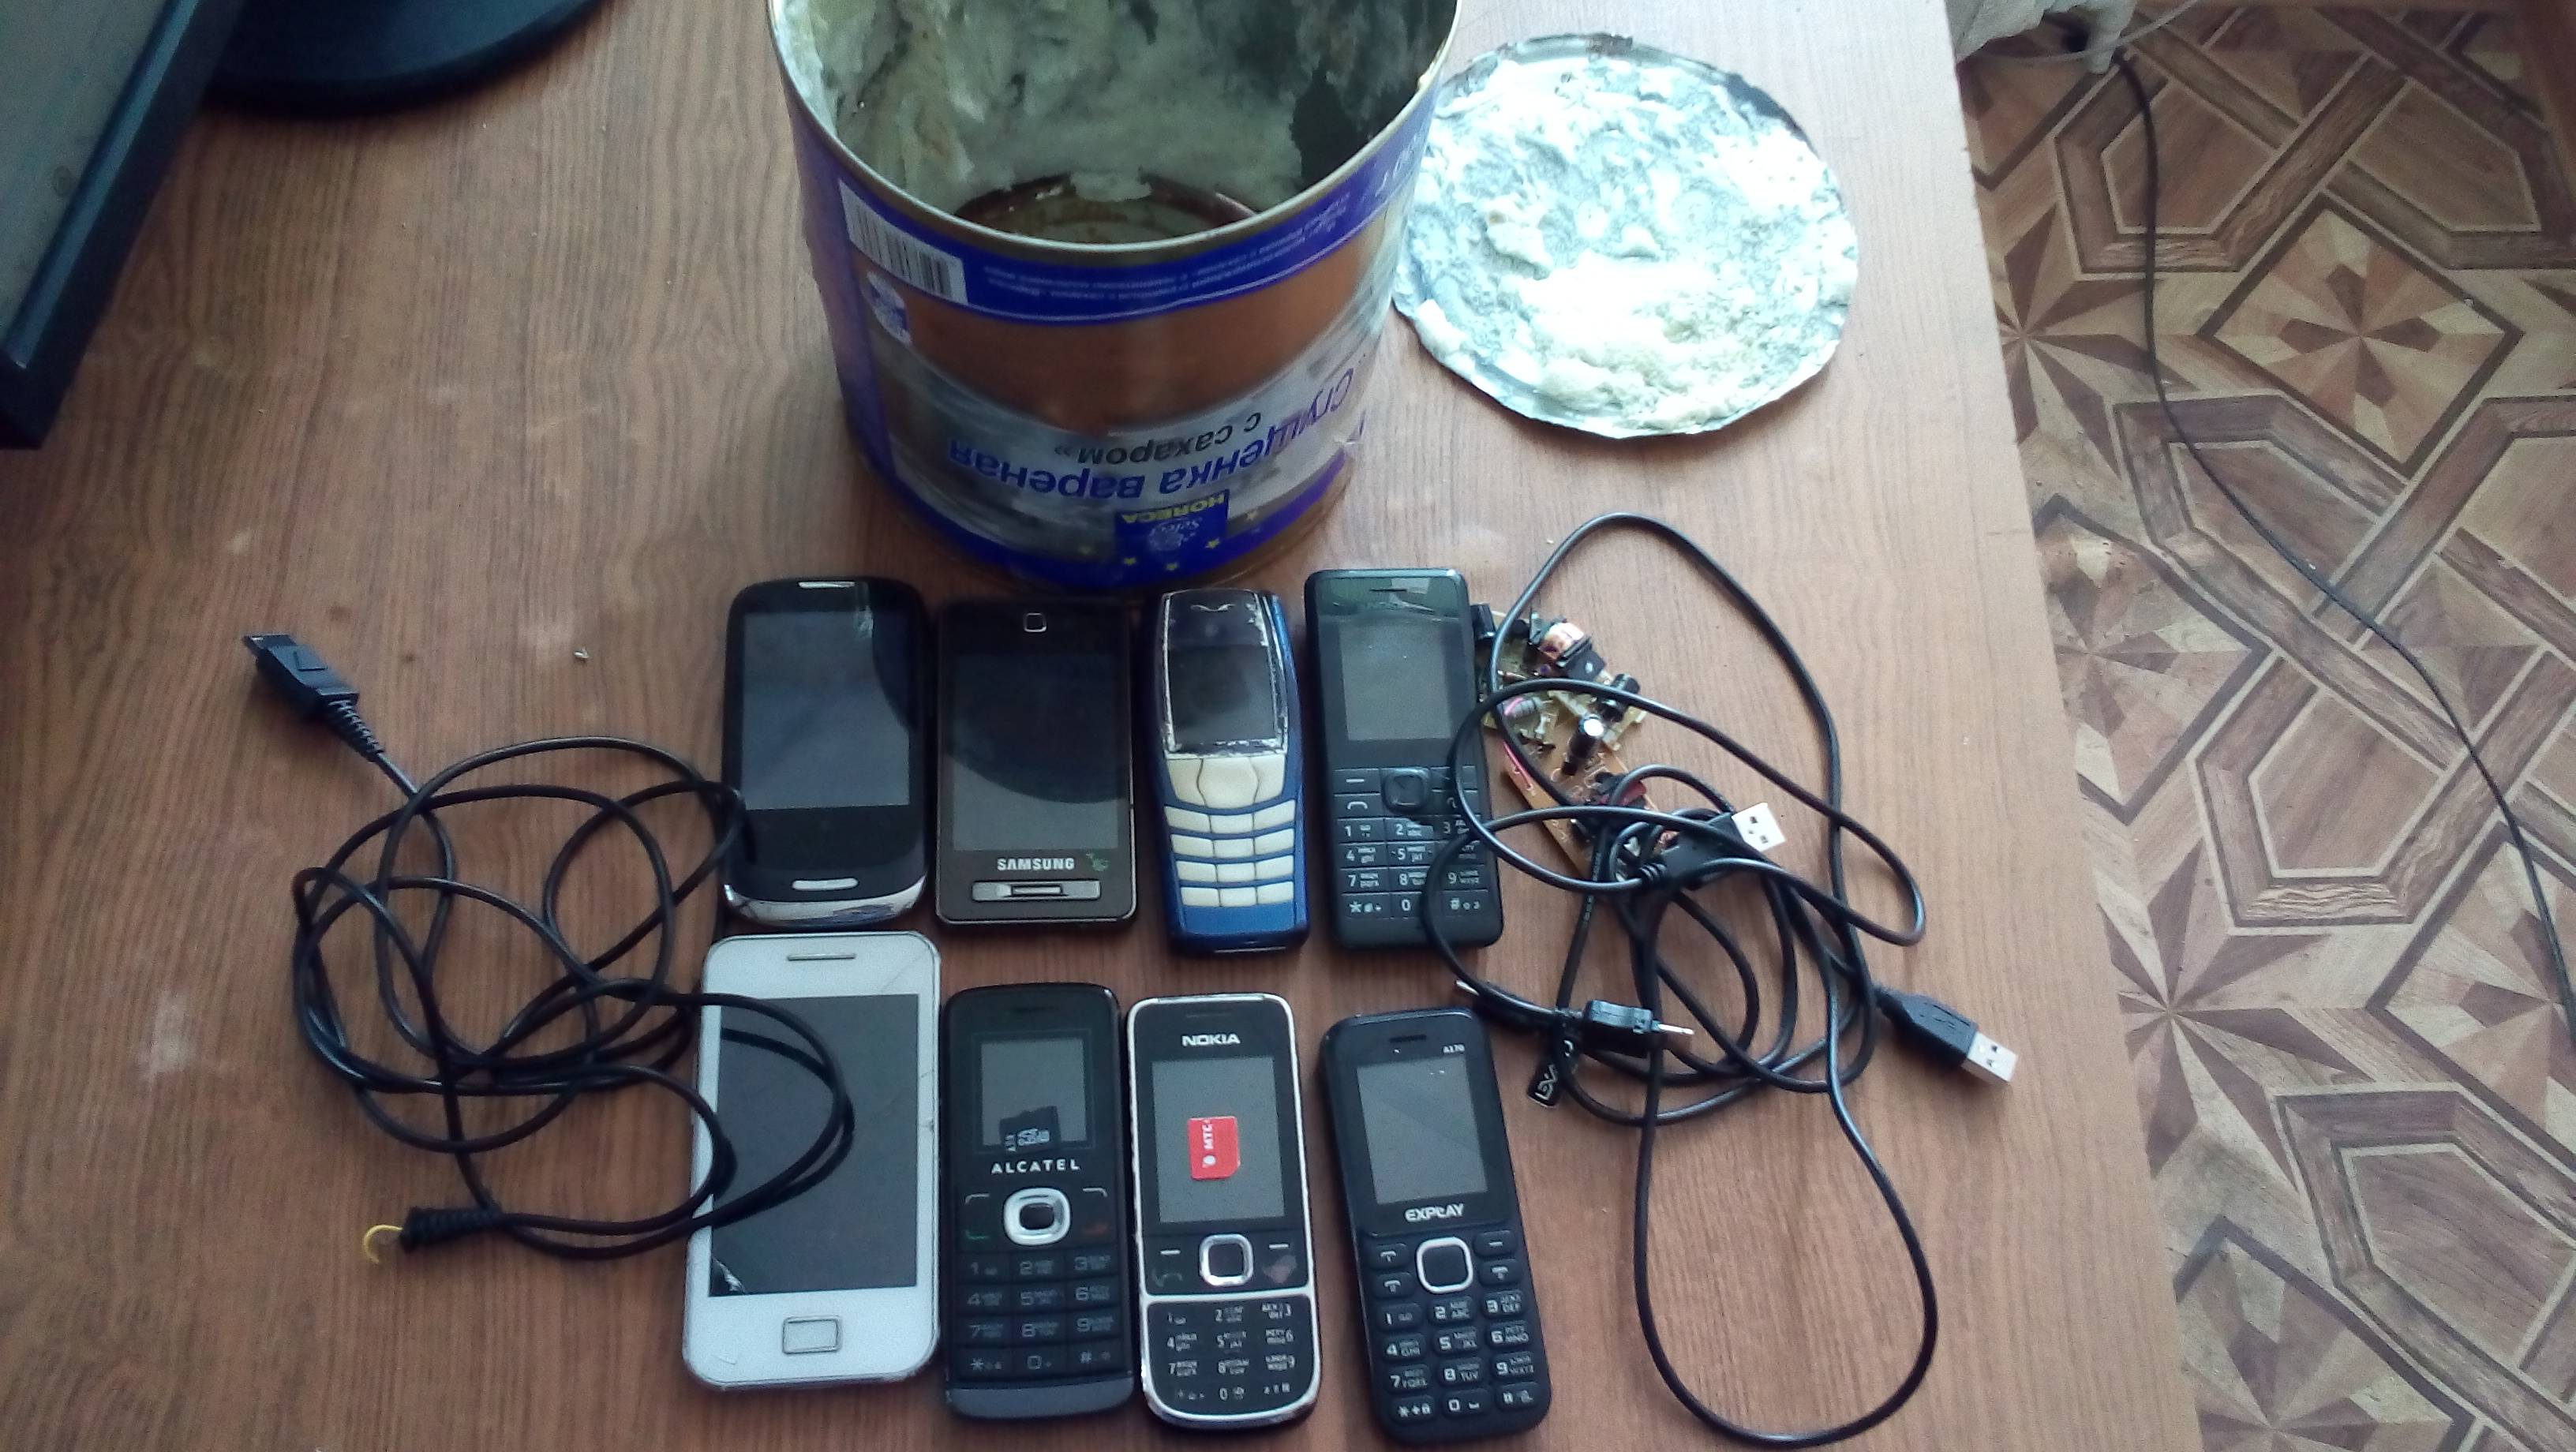 В одной из колоний в Удмуртии в банке со сгущенкой нашли восемь телефонов и устройства к ним. Фото: пресс-служба УФСИН РФ по УР